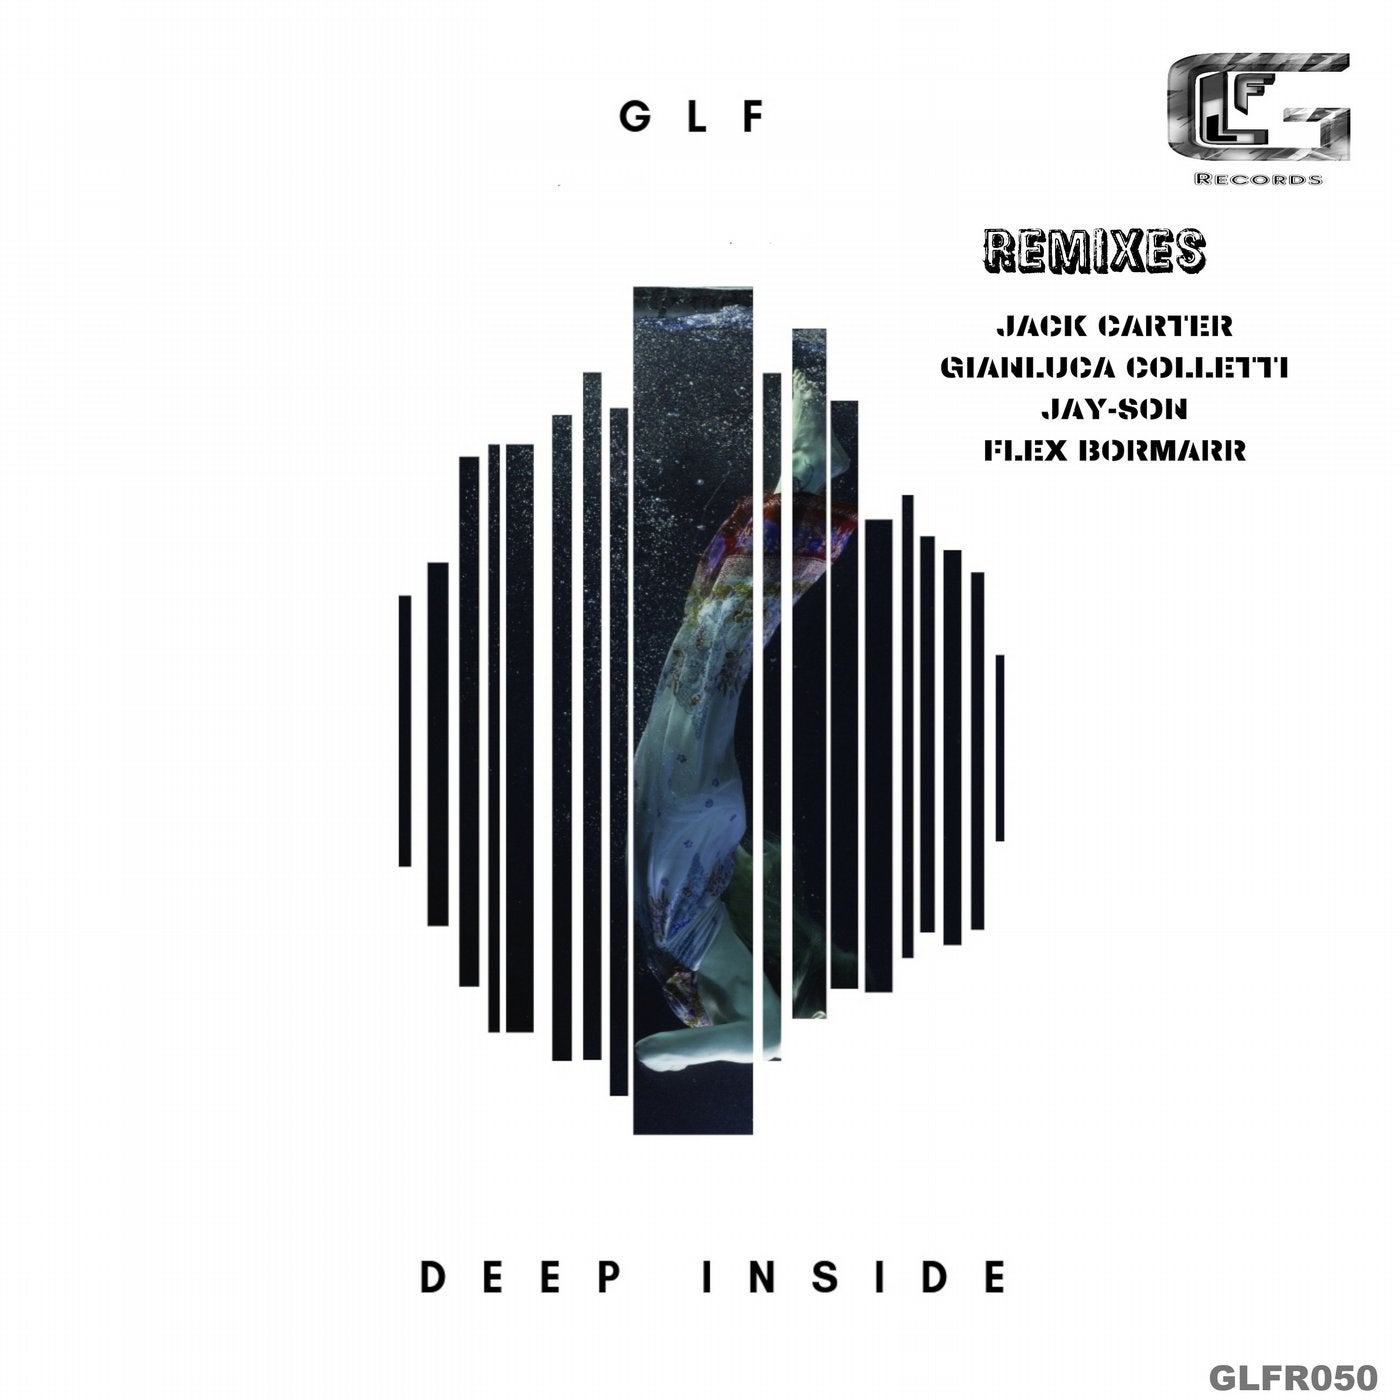 Deep Inside (Remixes)